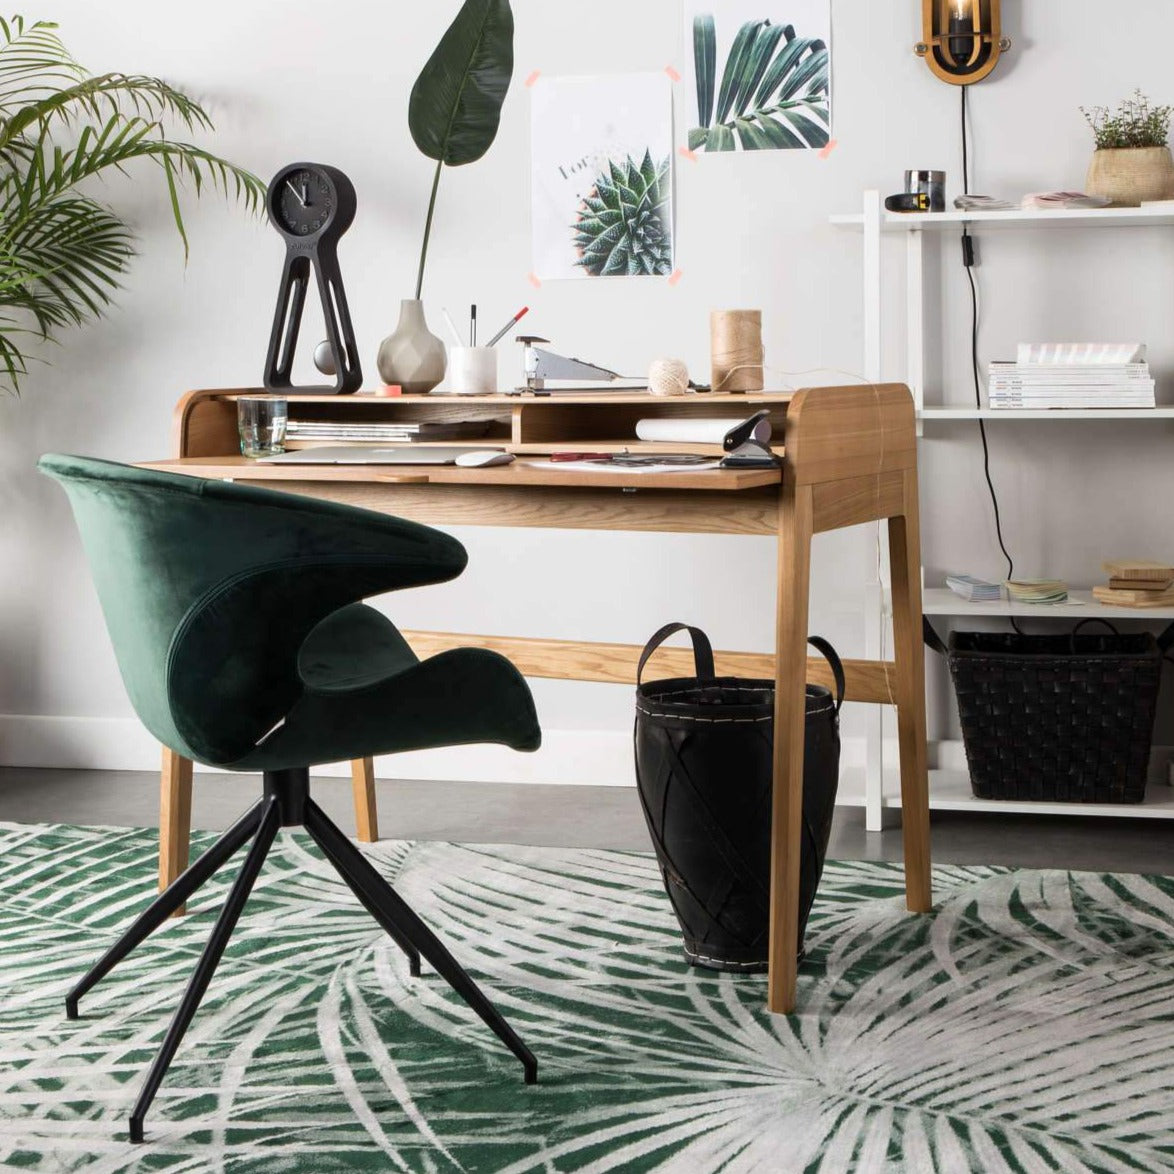 MIA armchair green, Zuiver, Eye on Design